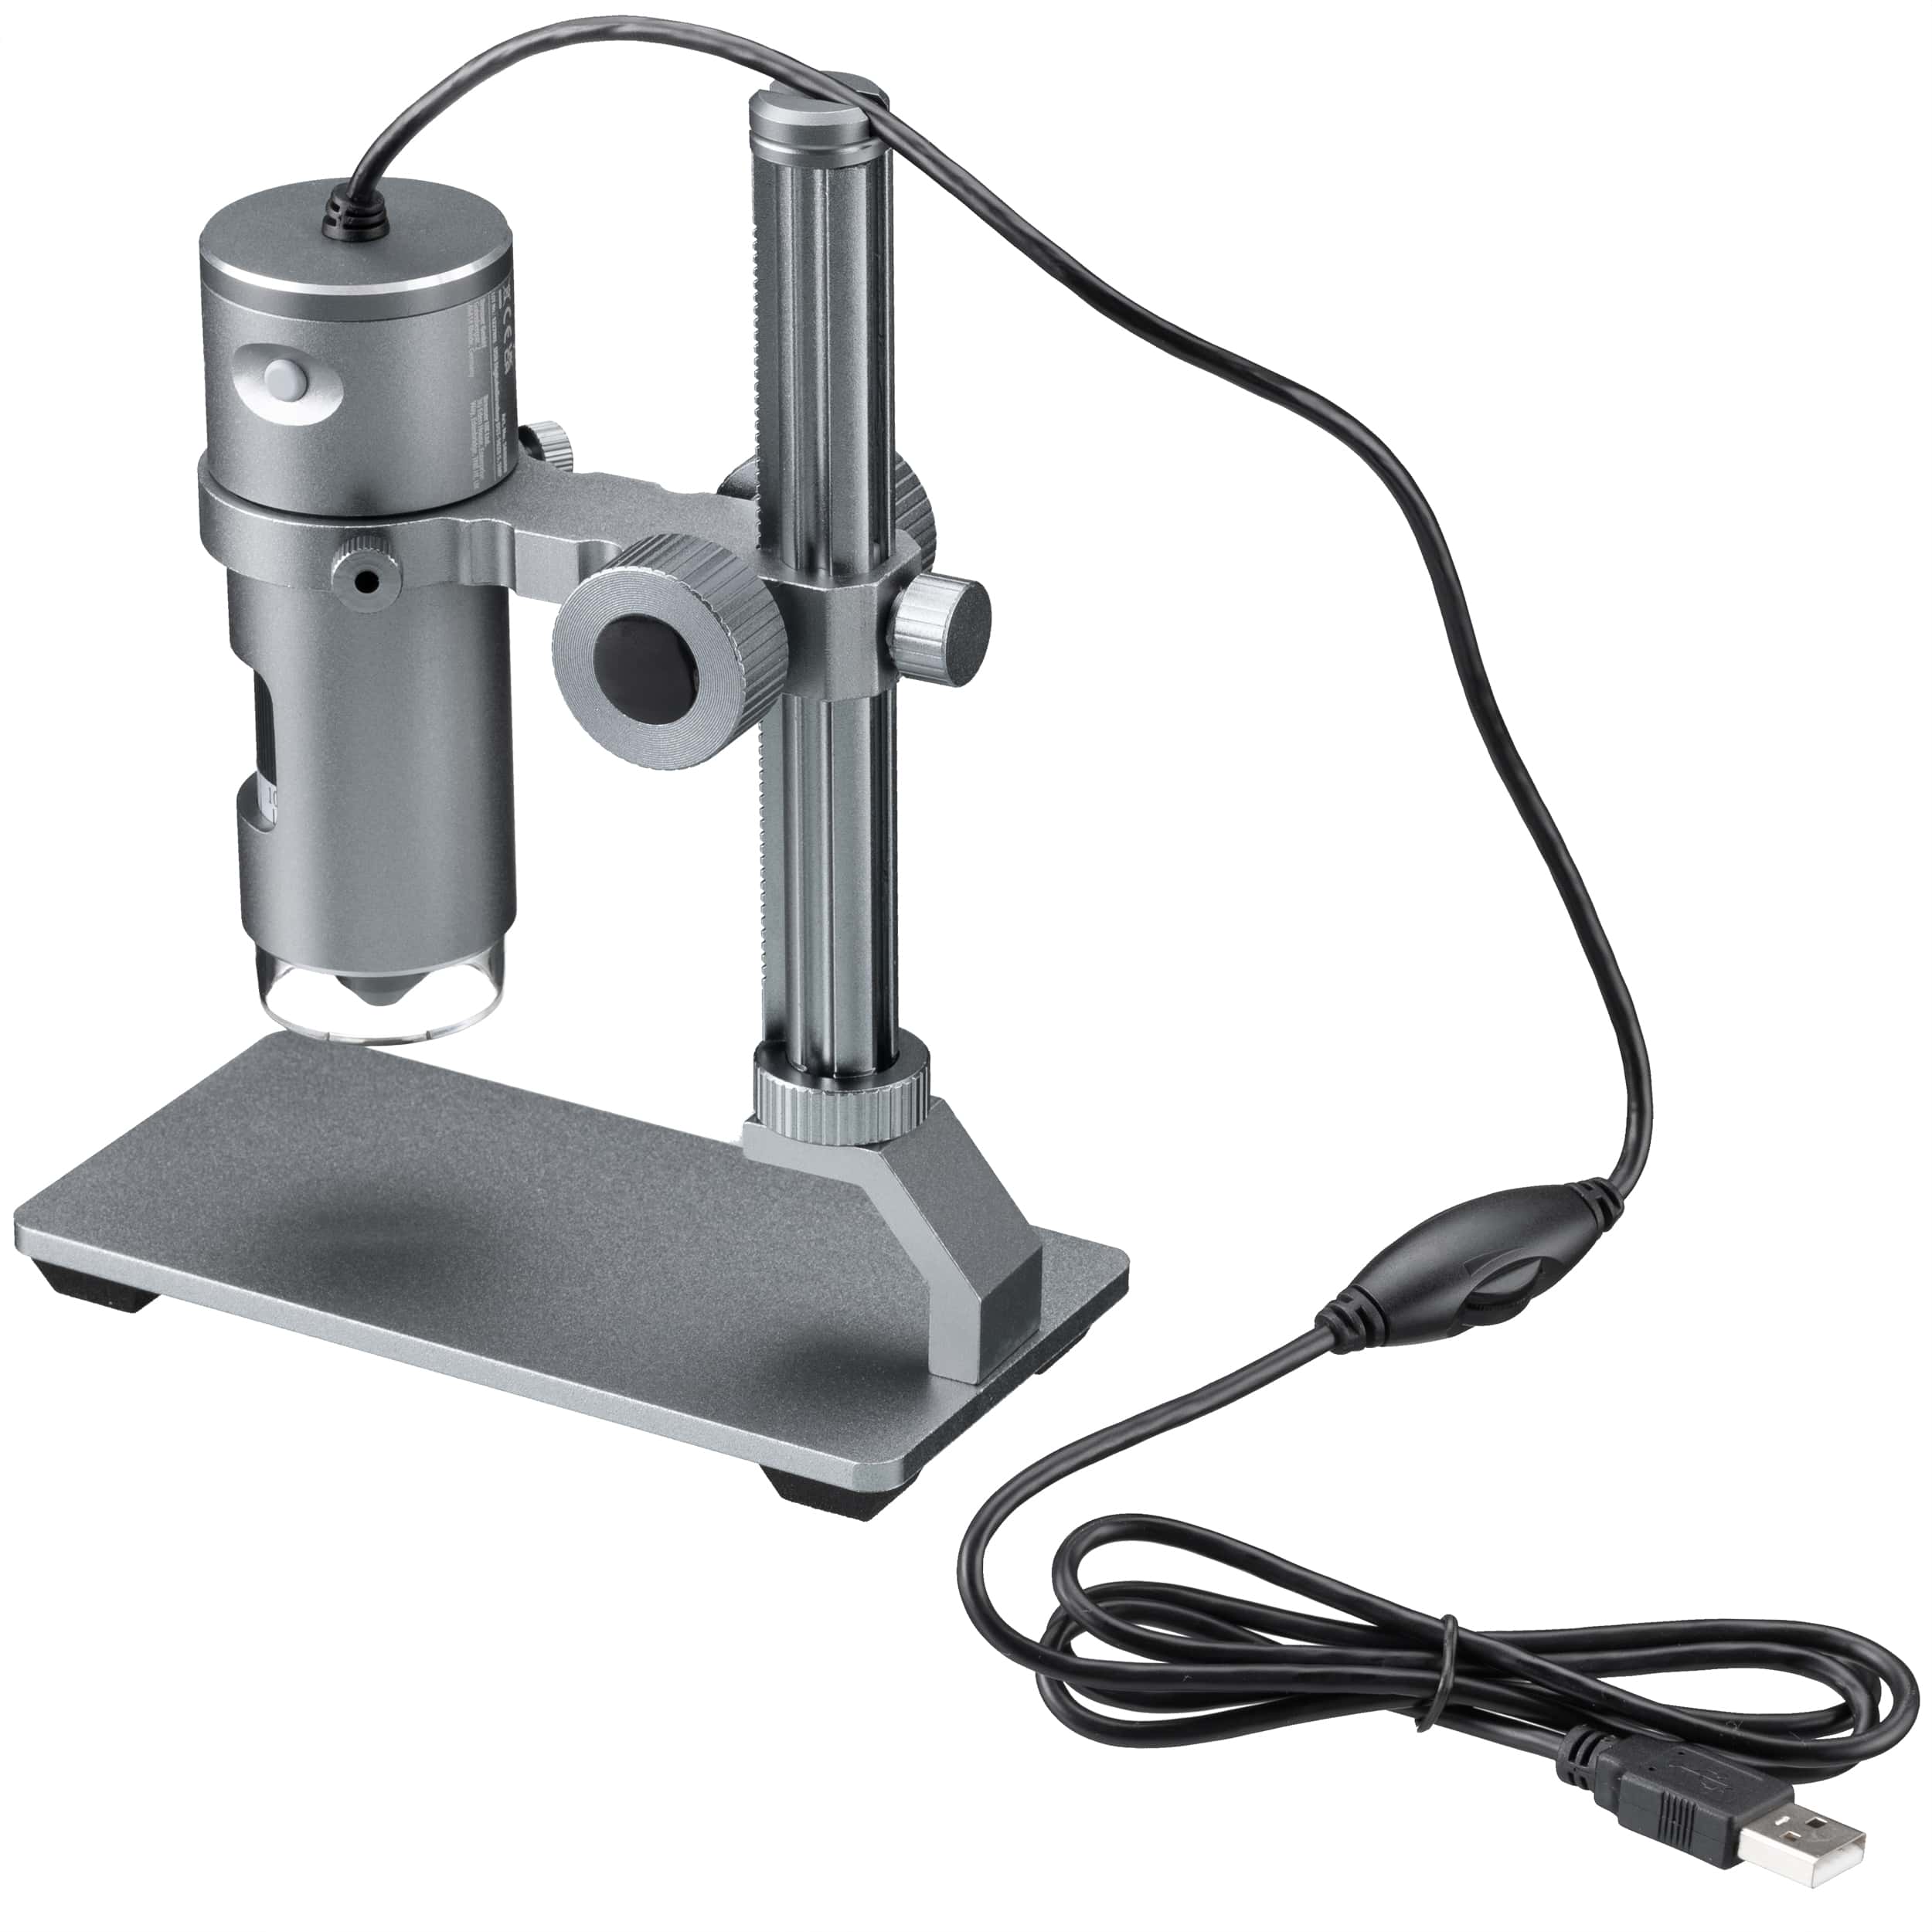   Potente microscopio digitale per hobbistica e lavoro  